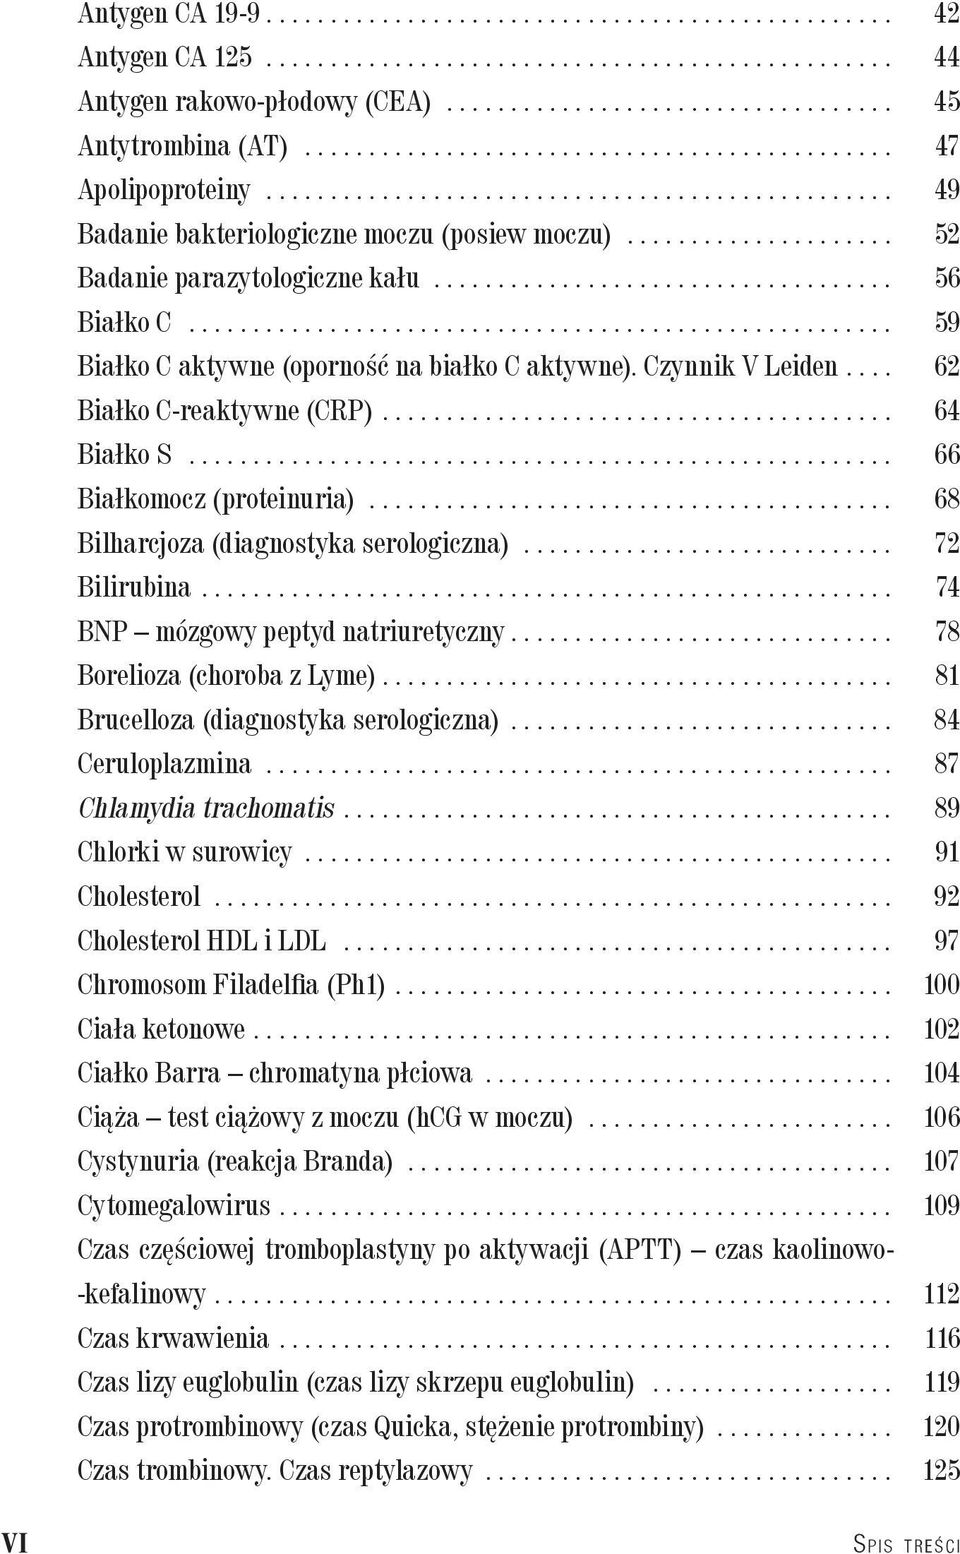 .. 68 Bilharcjoza (diagnostyka serologiczna)... 72 Bilirubina... 74 BNP mózgowy peptyd natriuretyczny... 78 Borelioza (choroba z Lyme)... 81 Brucelloza (diagnostyka serologiczna)... 84 Ceruloplazmina.